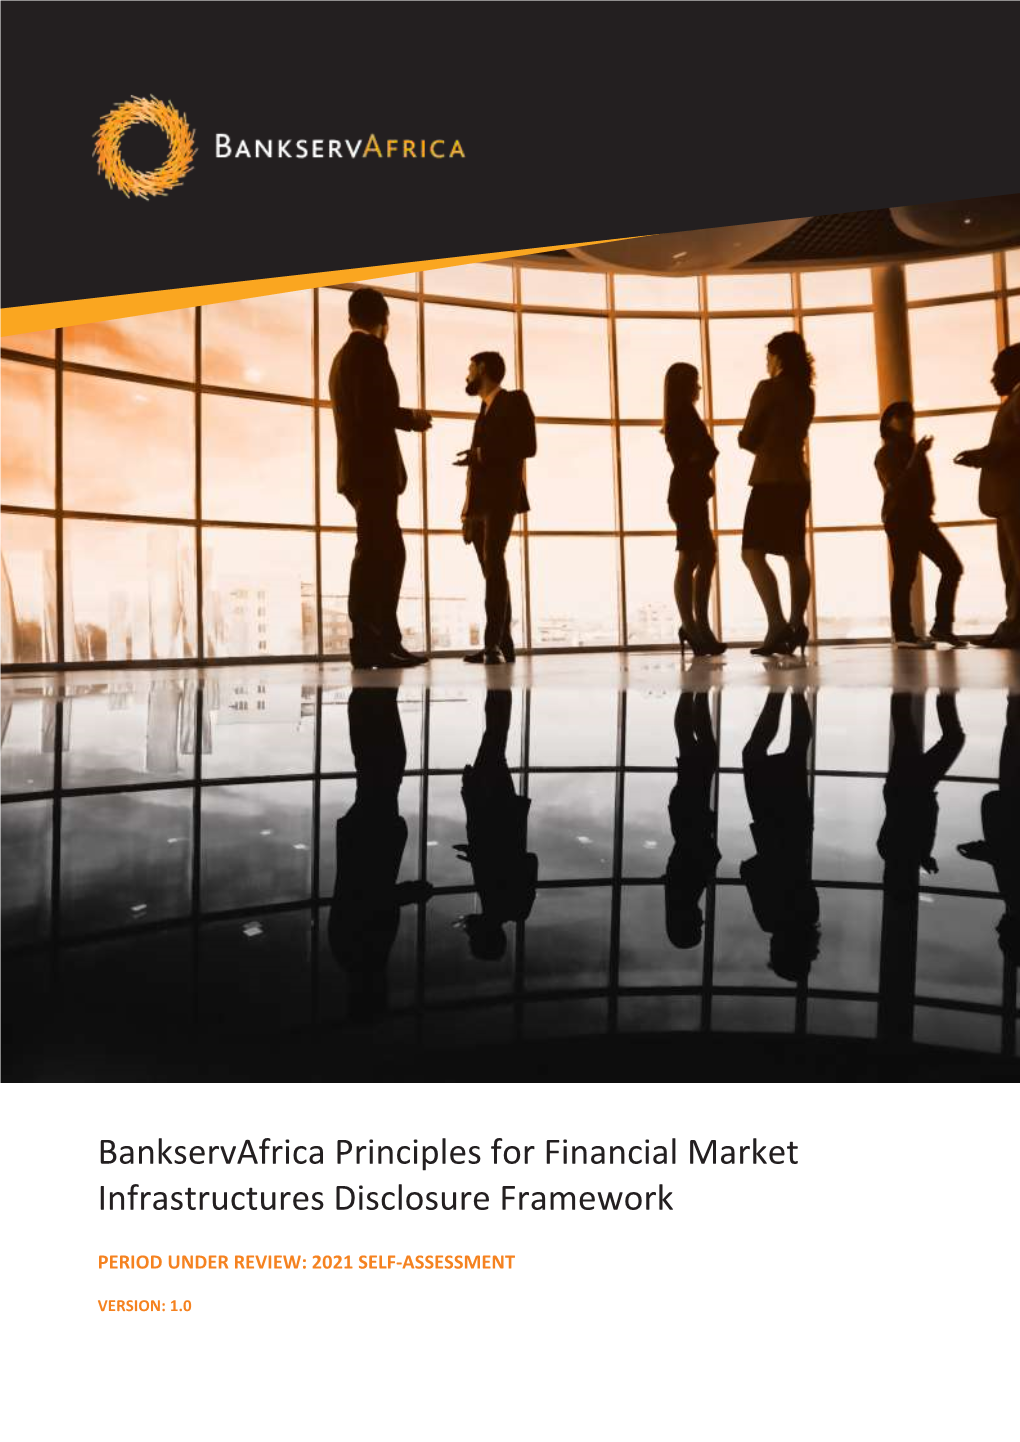 Bankservafrica Principles for Financial Market Infrastructures Disclosure Framework